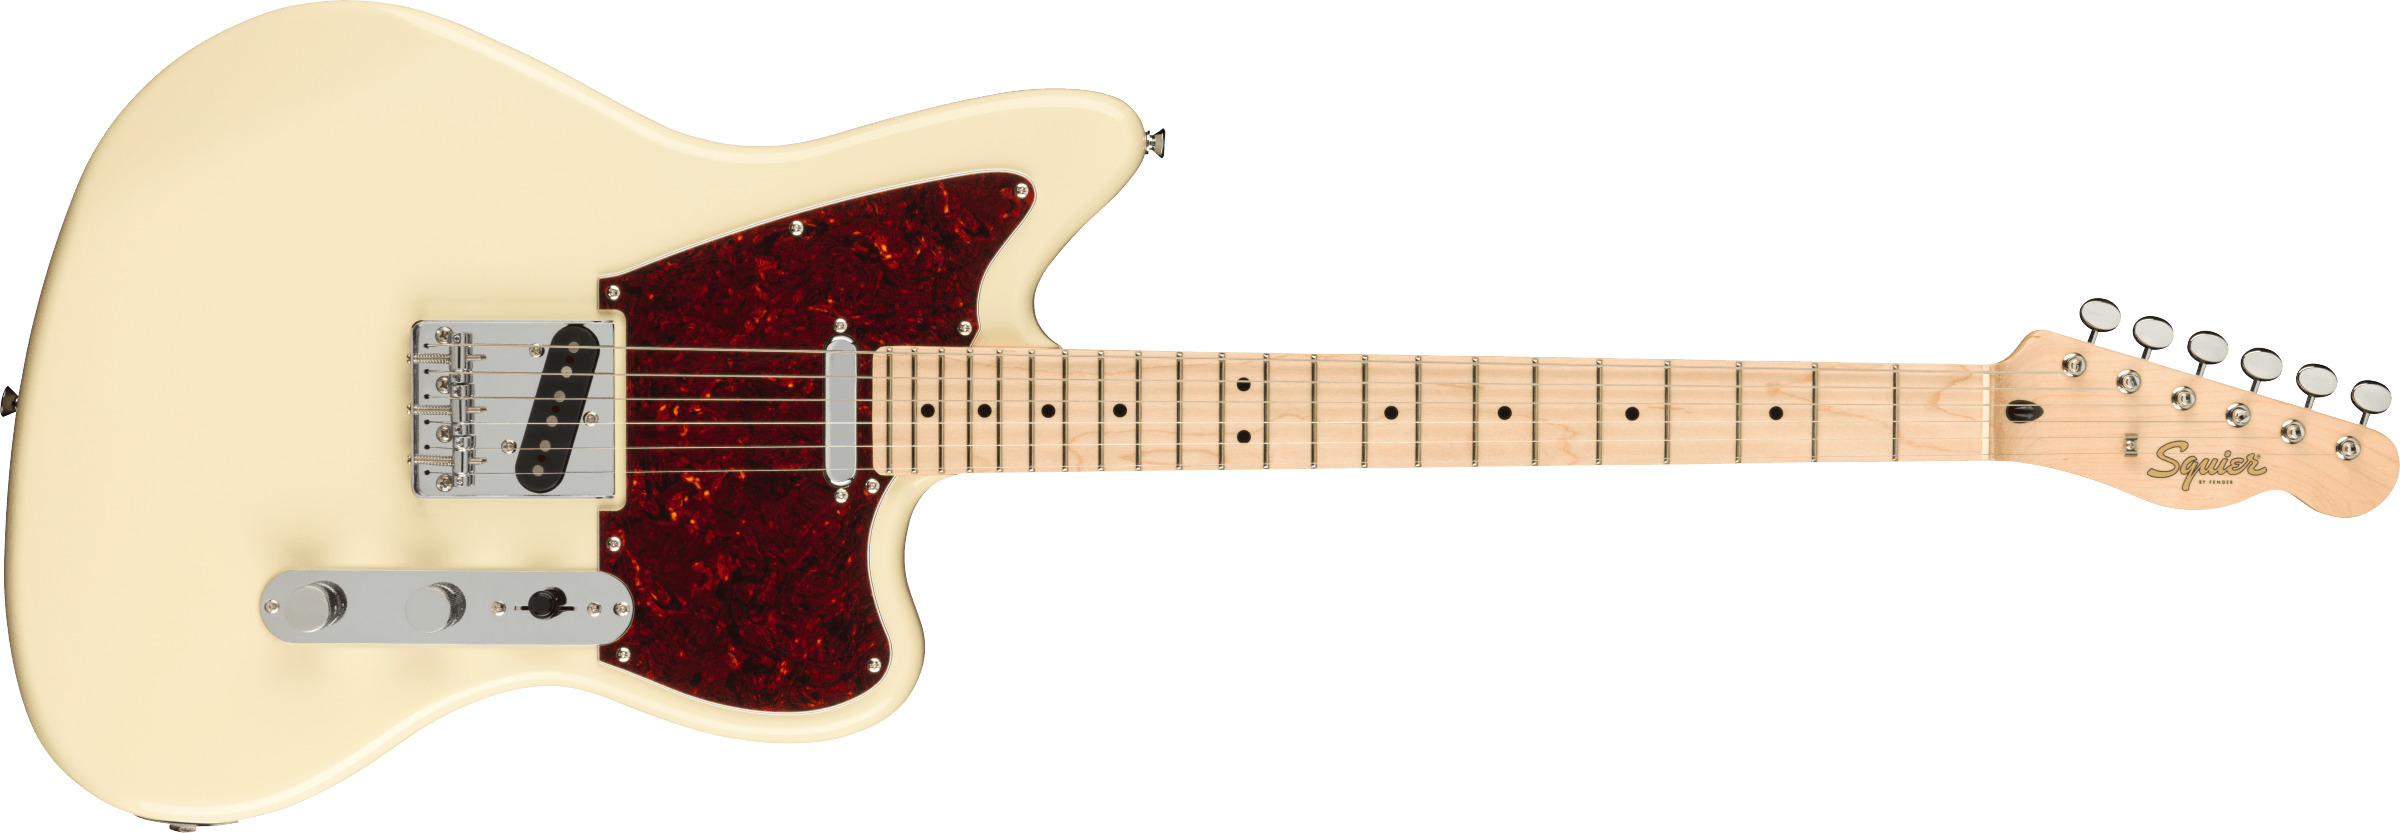 Billede af Fender Squier Paranormal Offset Telecaster El-guitar (Olympic White)